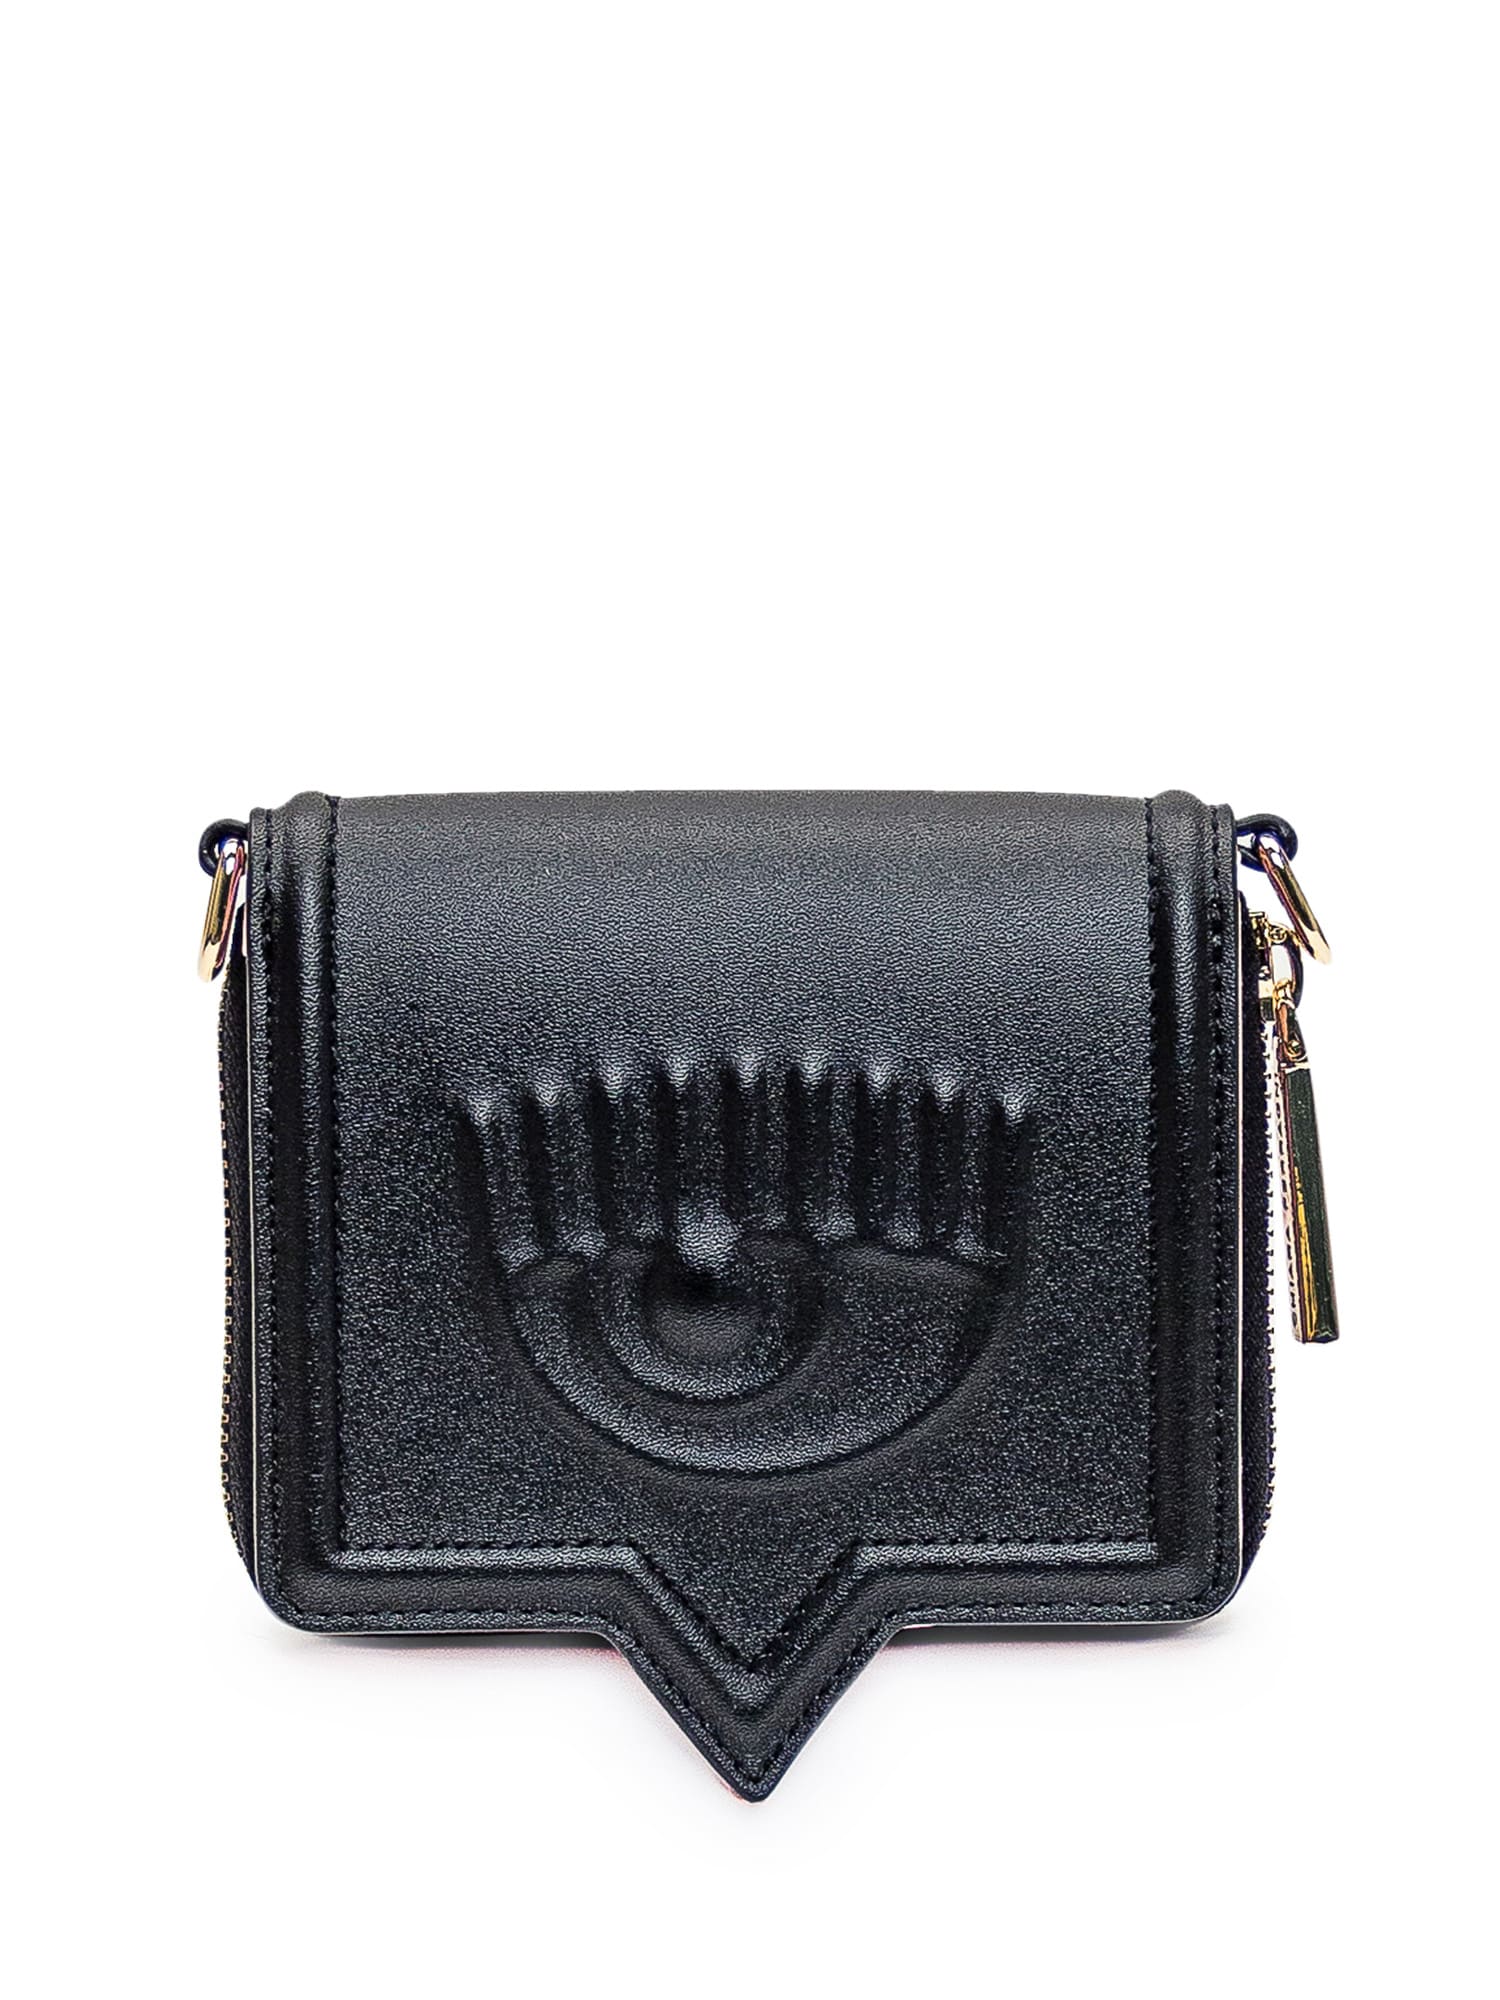 Chiara Ferragni Wallet in Black